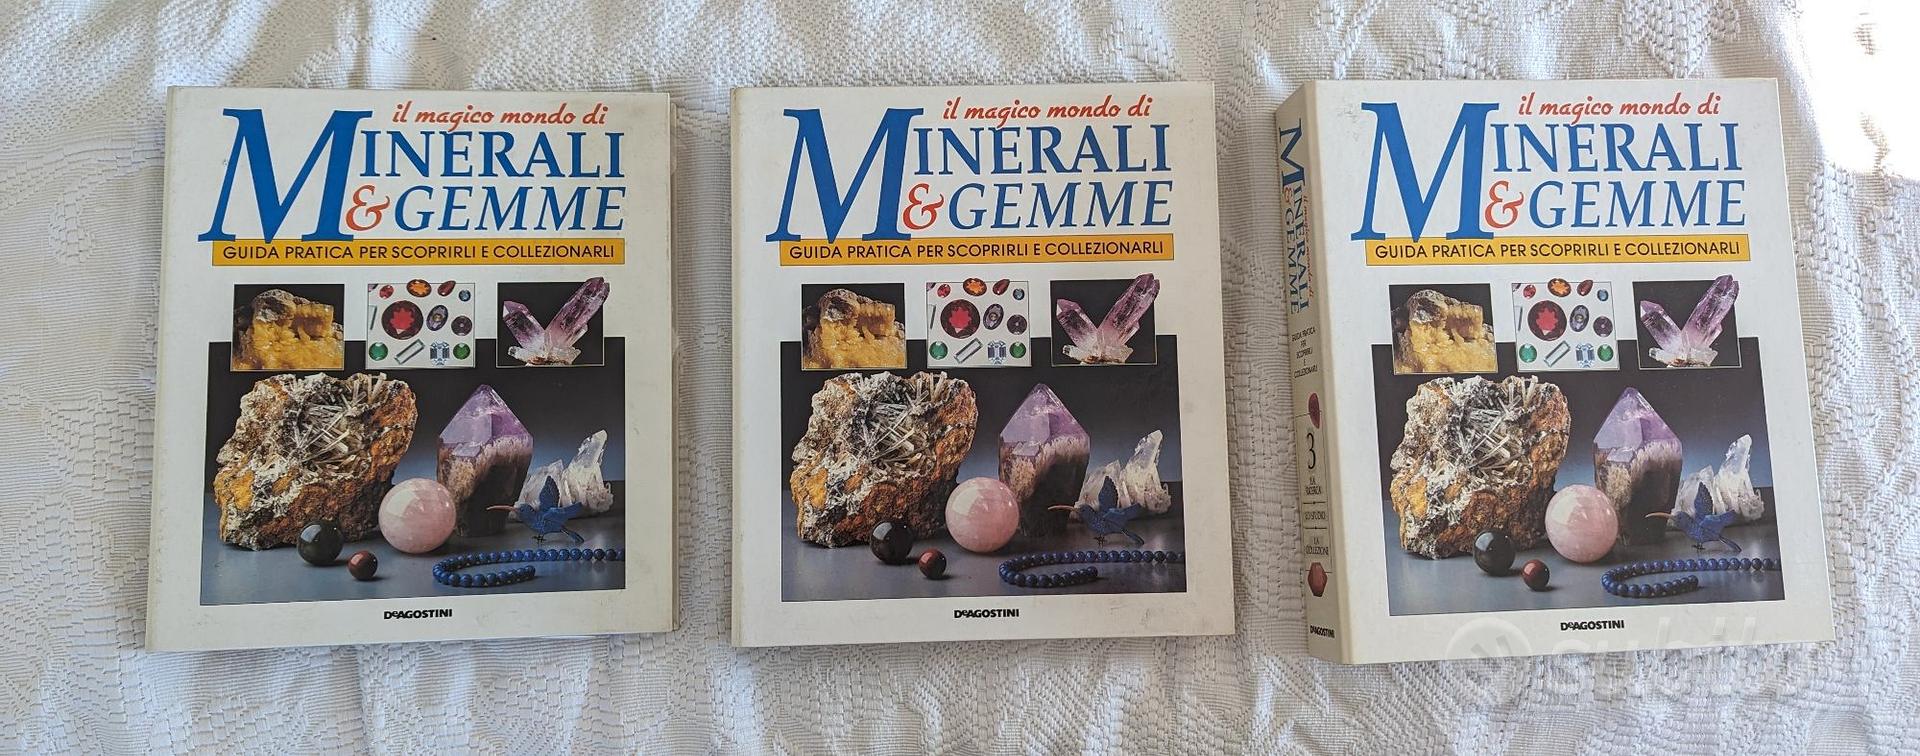 Il magico mondo di Minerali e gemme DeAgostini - Collezionismo In vendita a  Modena